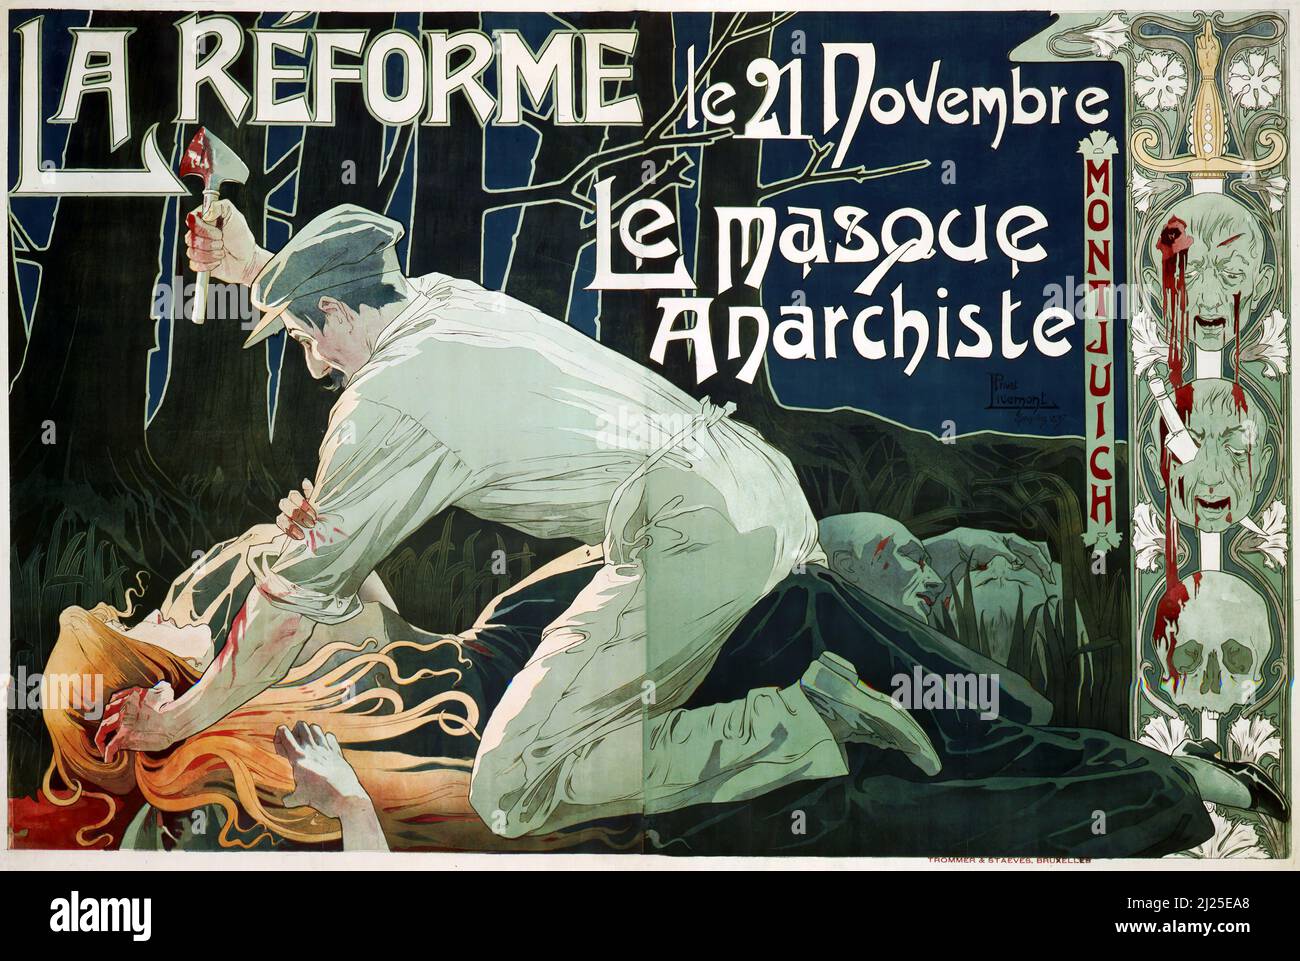 Vintage Art Nouveau by Henri Privat-Livemont - La Reforme, le 21 Novembre, le masque anarchiste (1897). Old advertisement poster. Stock Photo